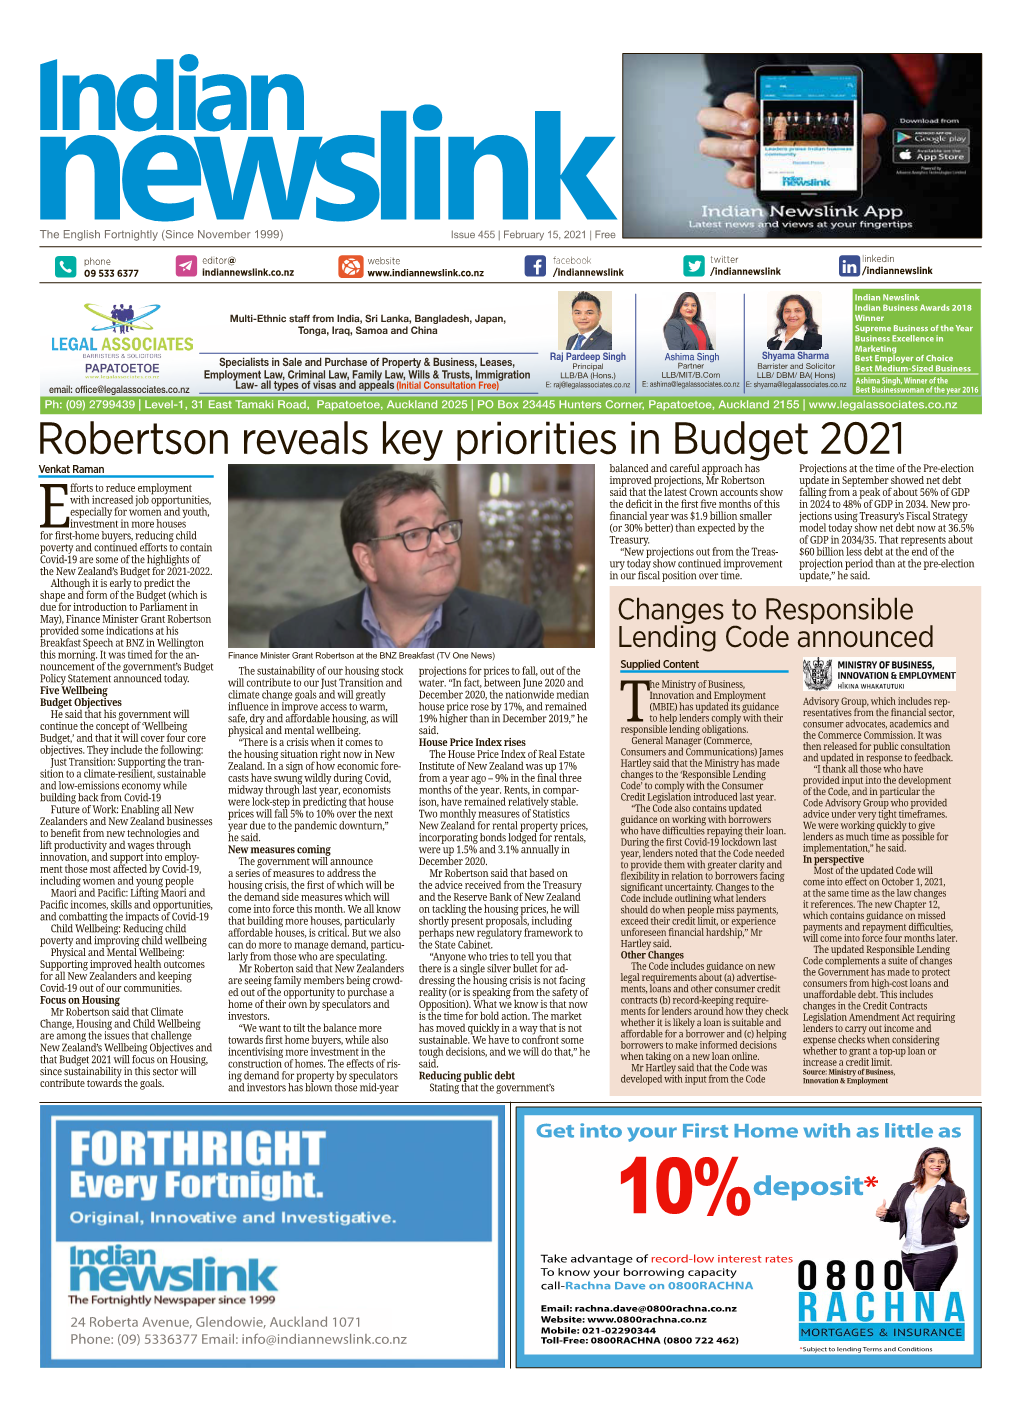 Robertson Reveals Key Priorities in Budget 2021